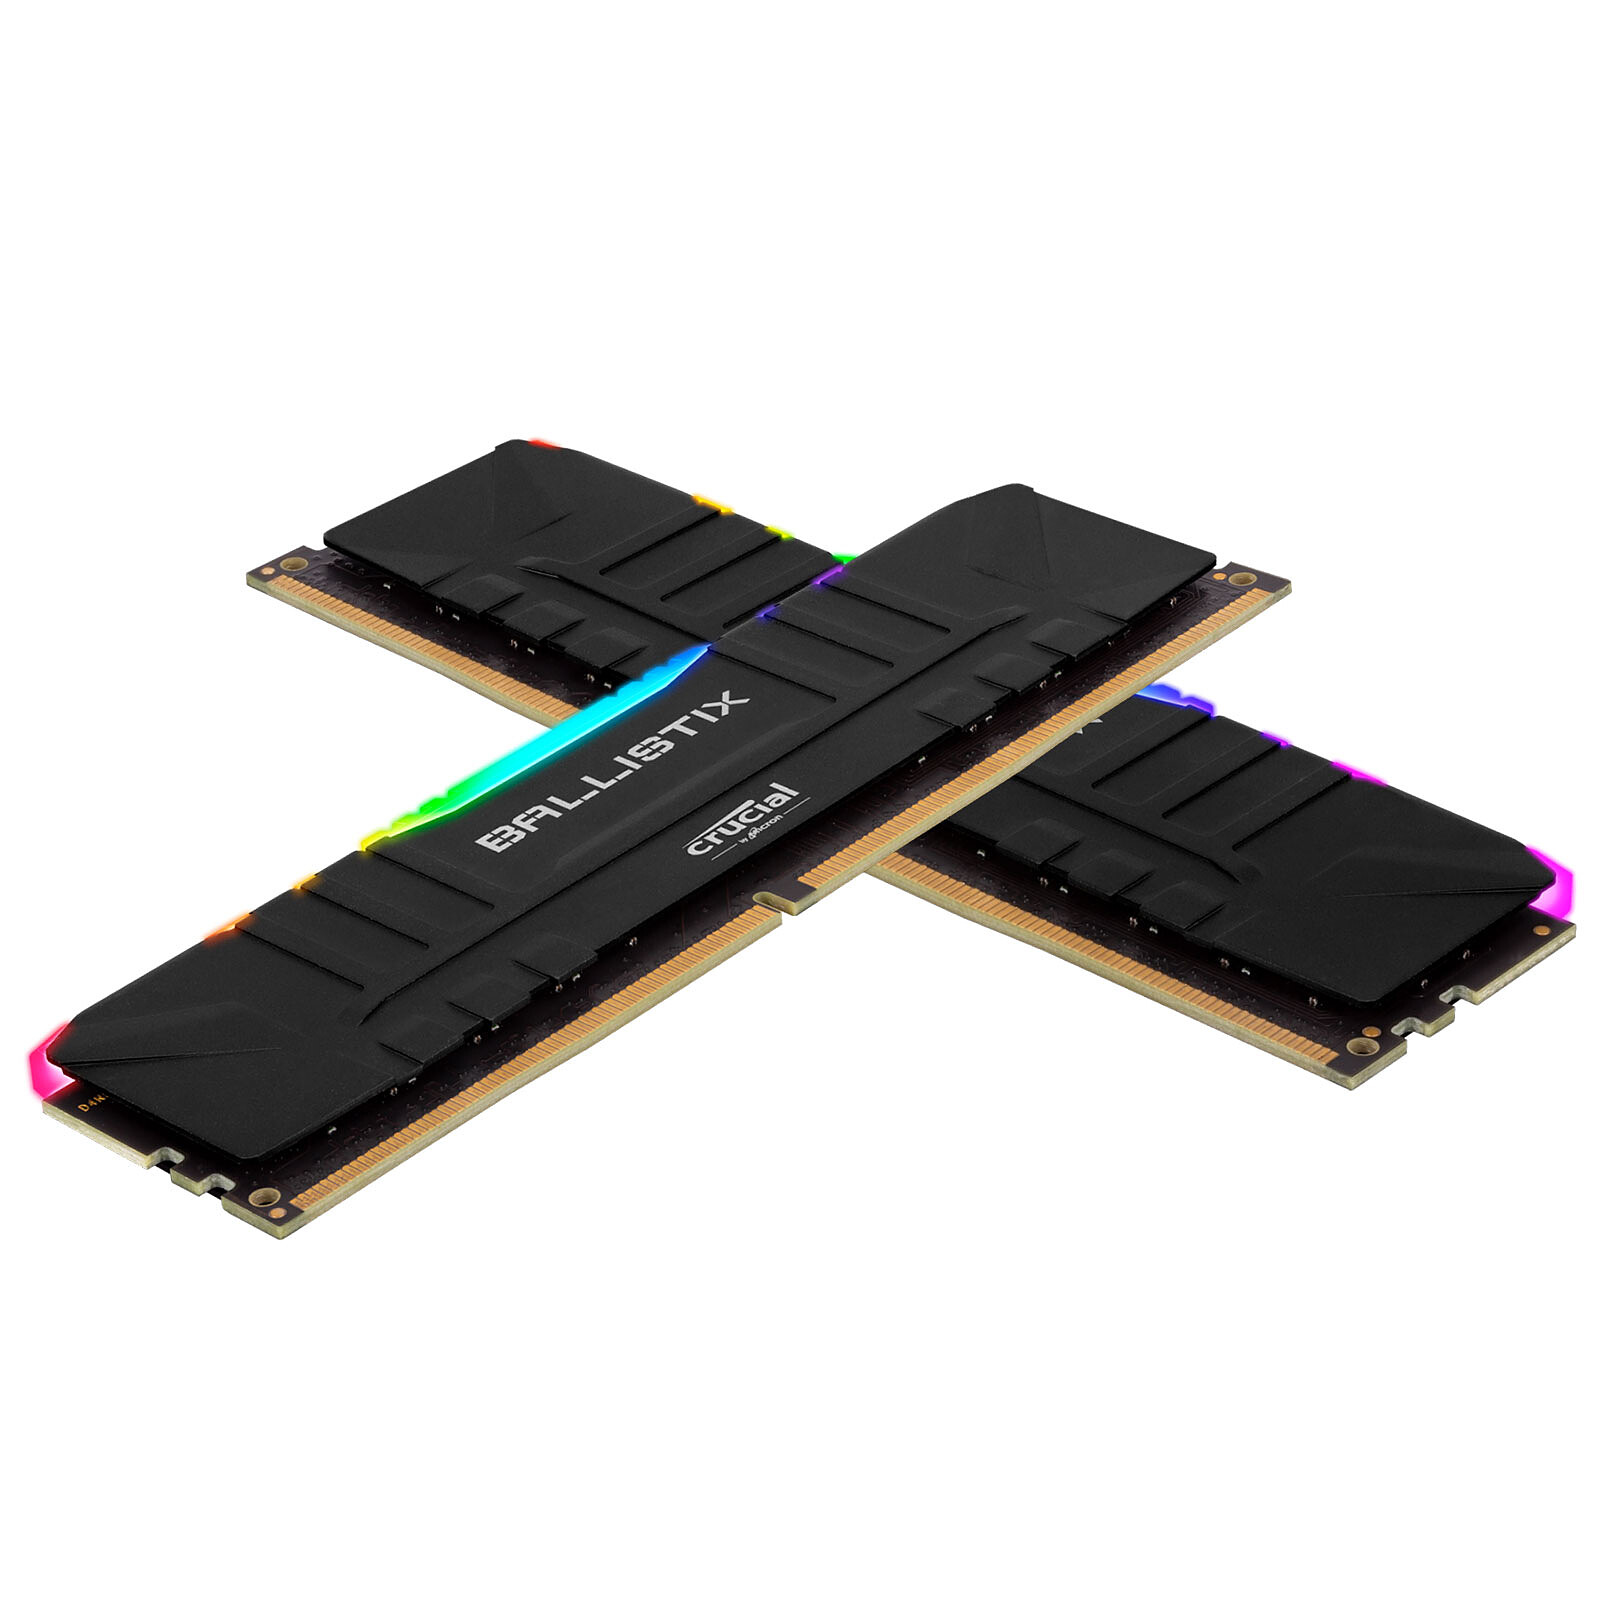 BALLISTIX - Mémoire PC RAM - 32Go (2x16Go) - 3200MHz - DDR4 - CAS